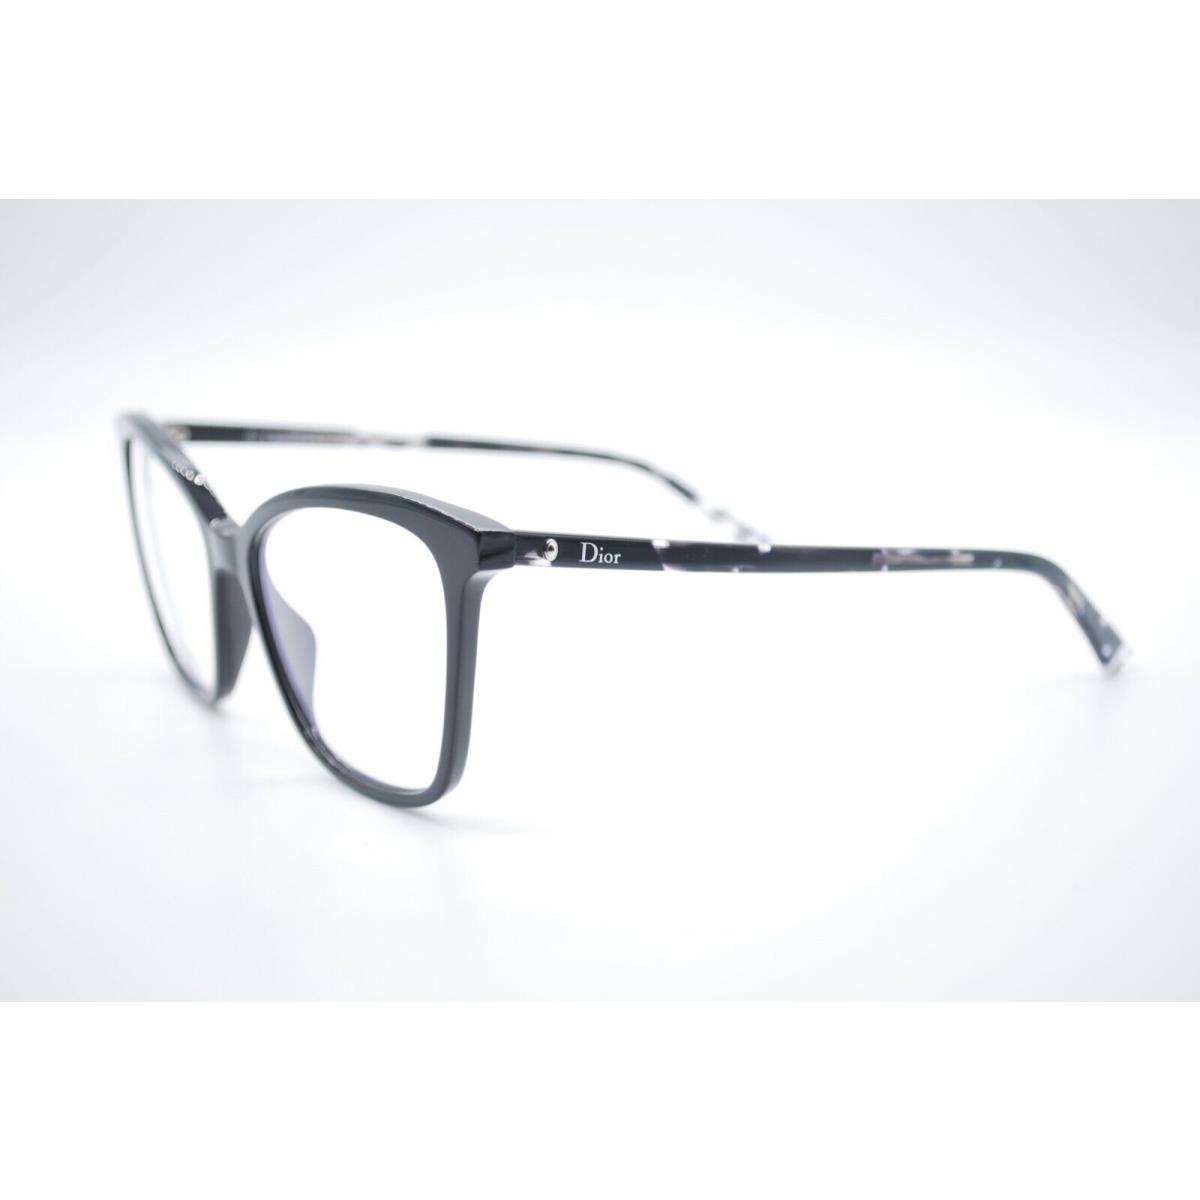 Dior eyeglasses  - Black Frame 0